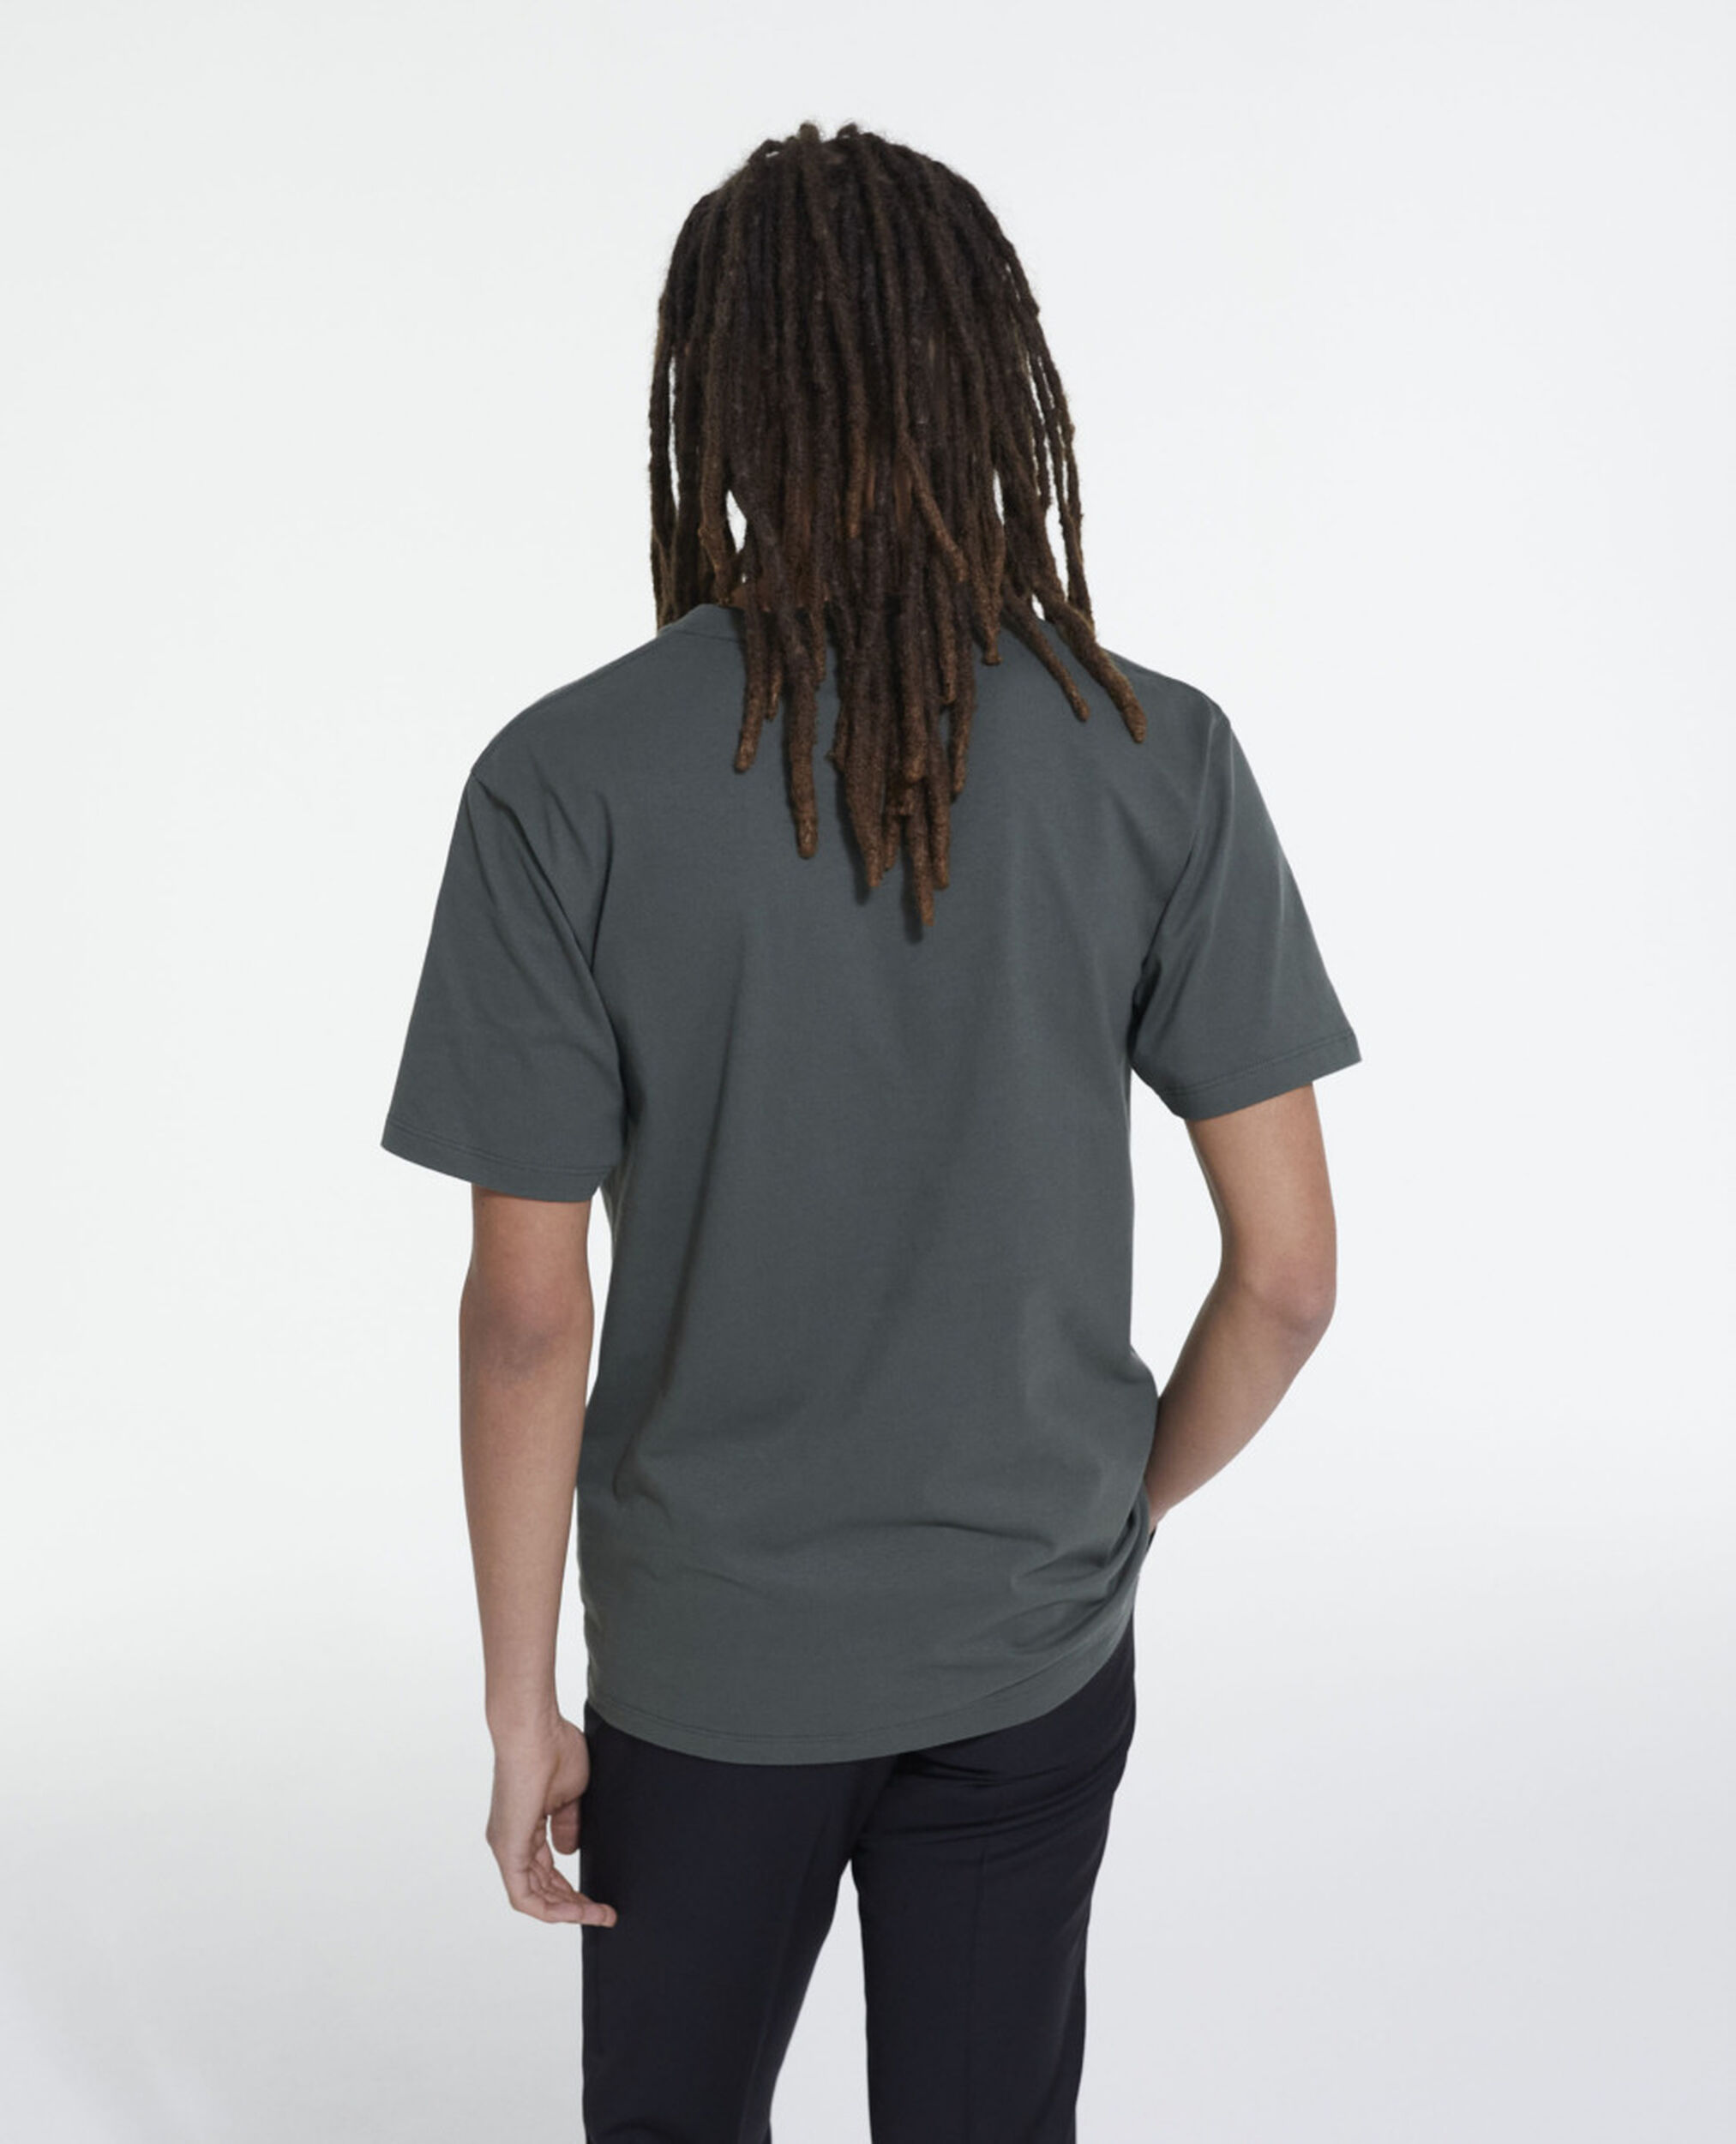 Grünes T-Shirt, FORET, hi-res image number null